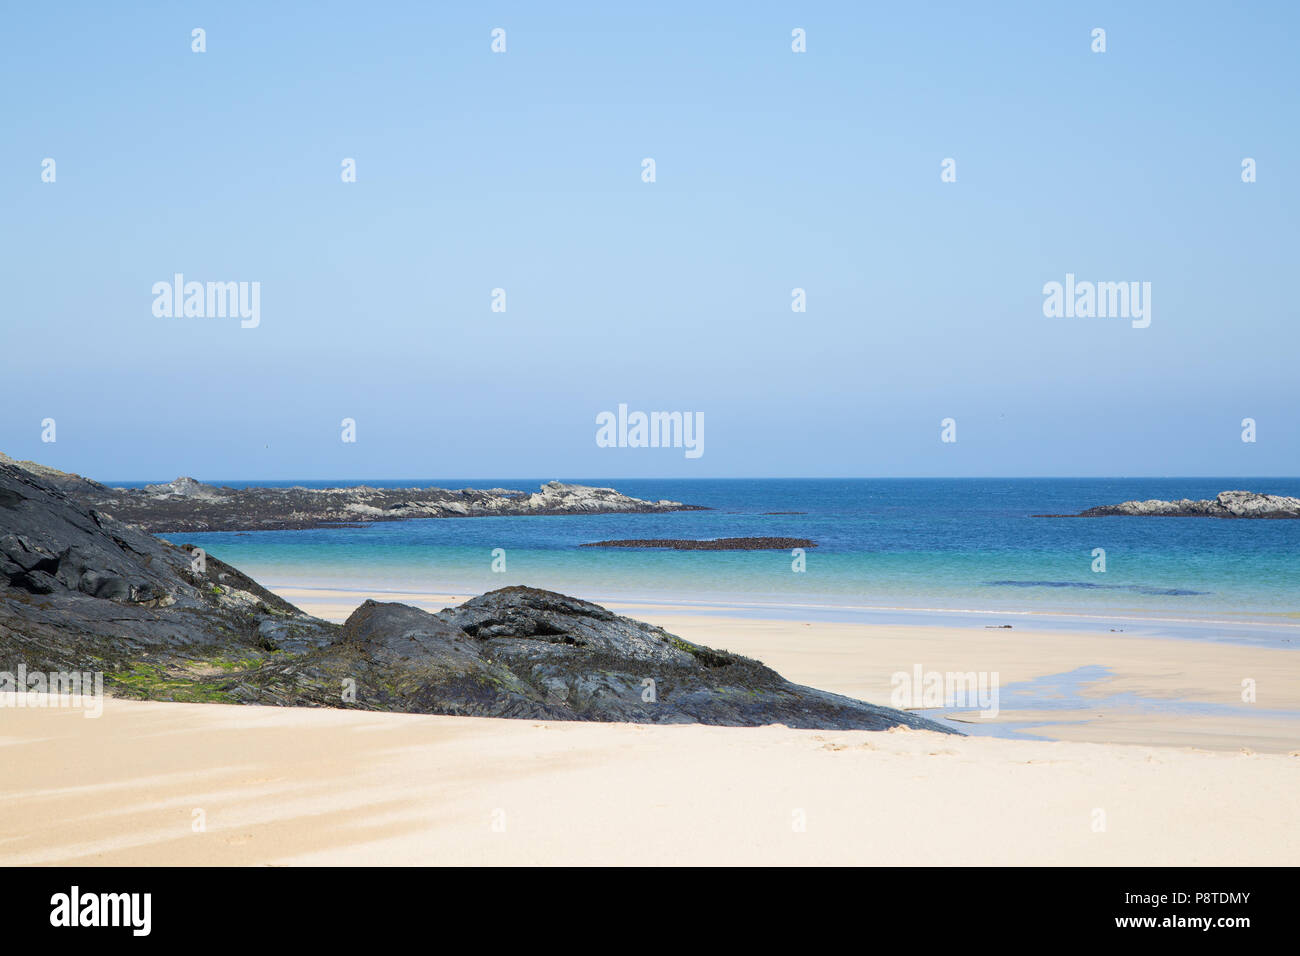 Wunderschöner leerer Sandstrand und blaues Meer, Colonsay, Argyll und Bute, Westküste Schottlands Stockfoto